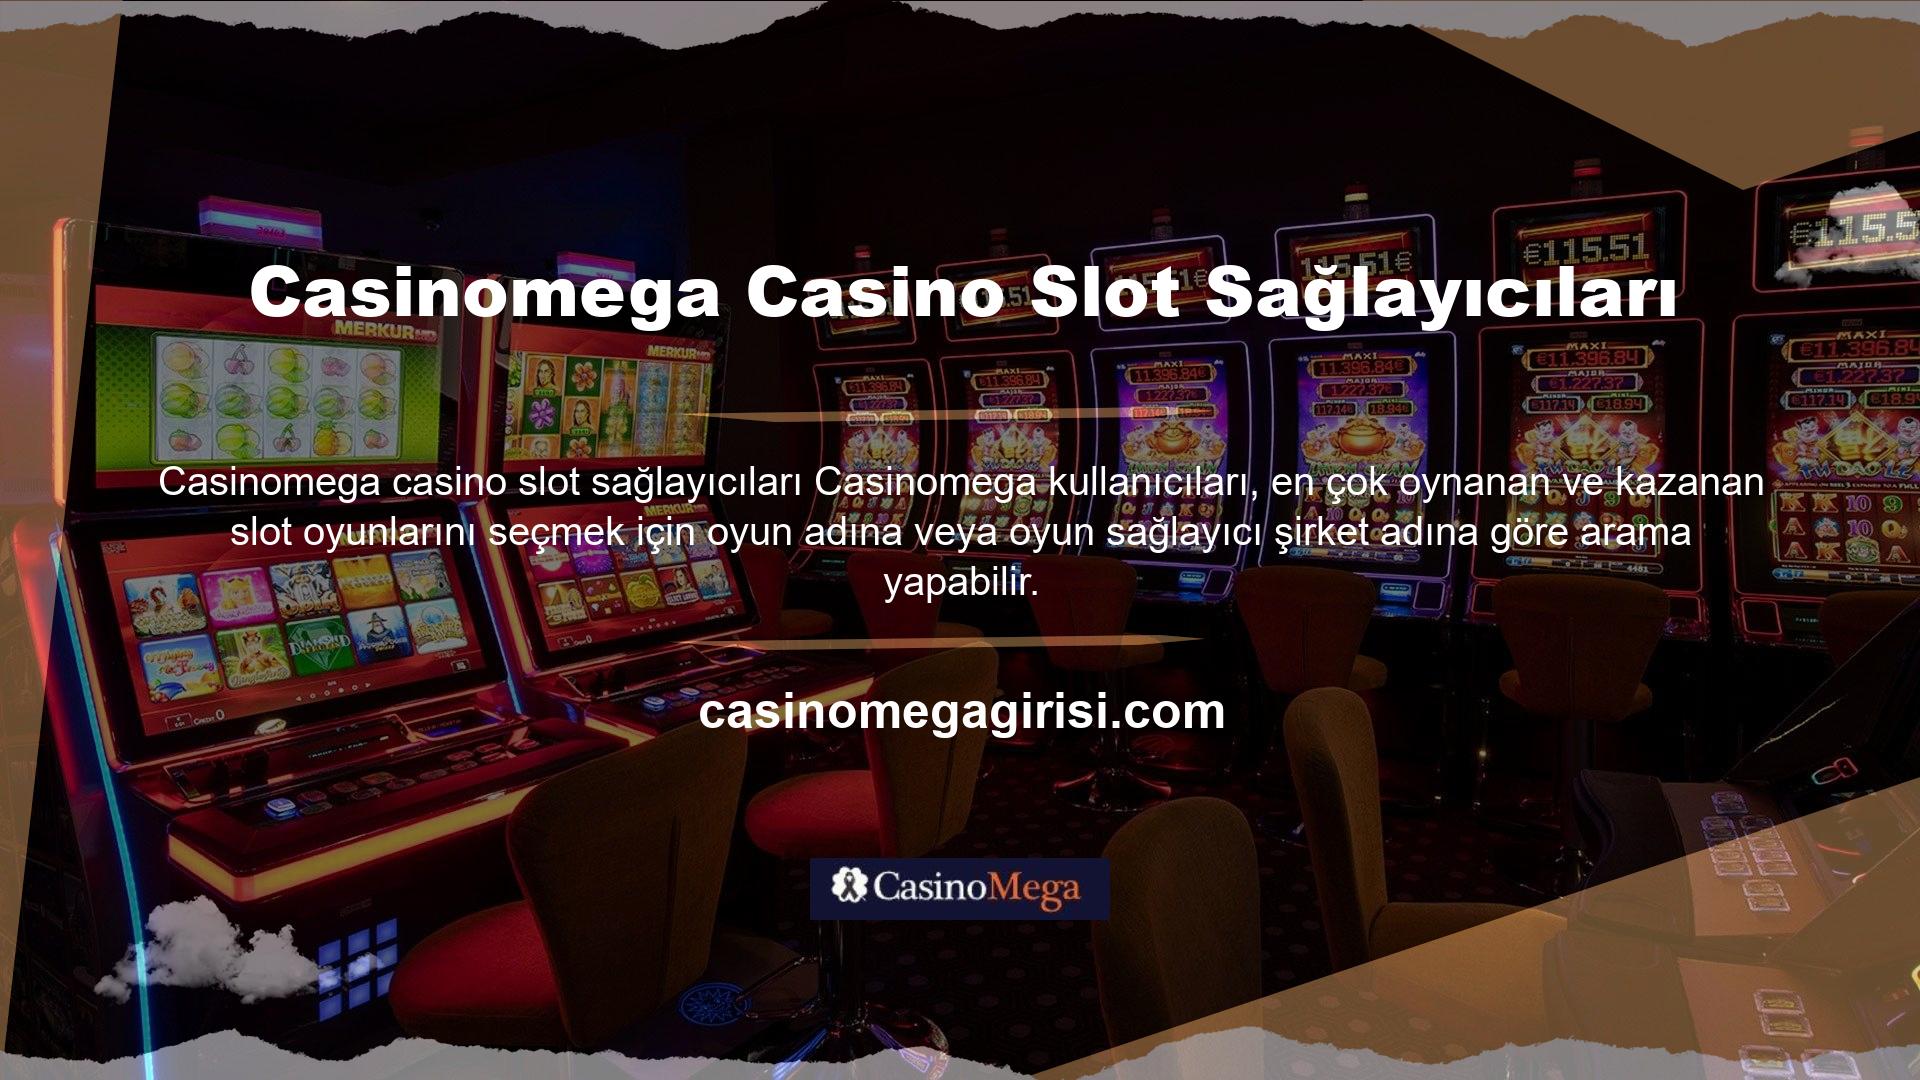 Tüm casino oyun sağlayıcıları, ana sayfanın Oyun Sağlayıcıları bölümünde listelenir